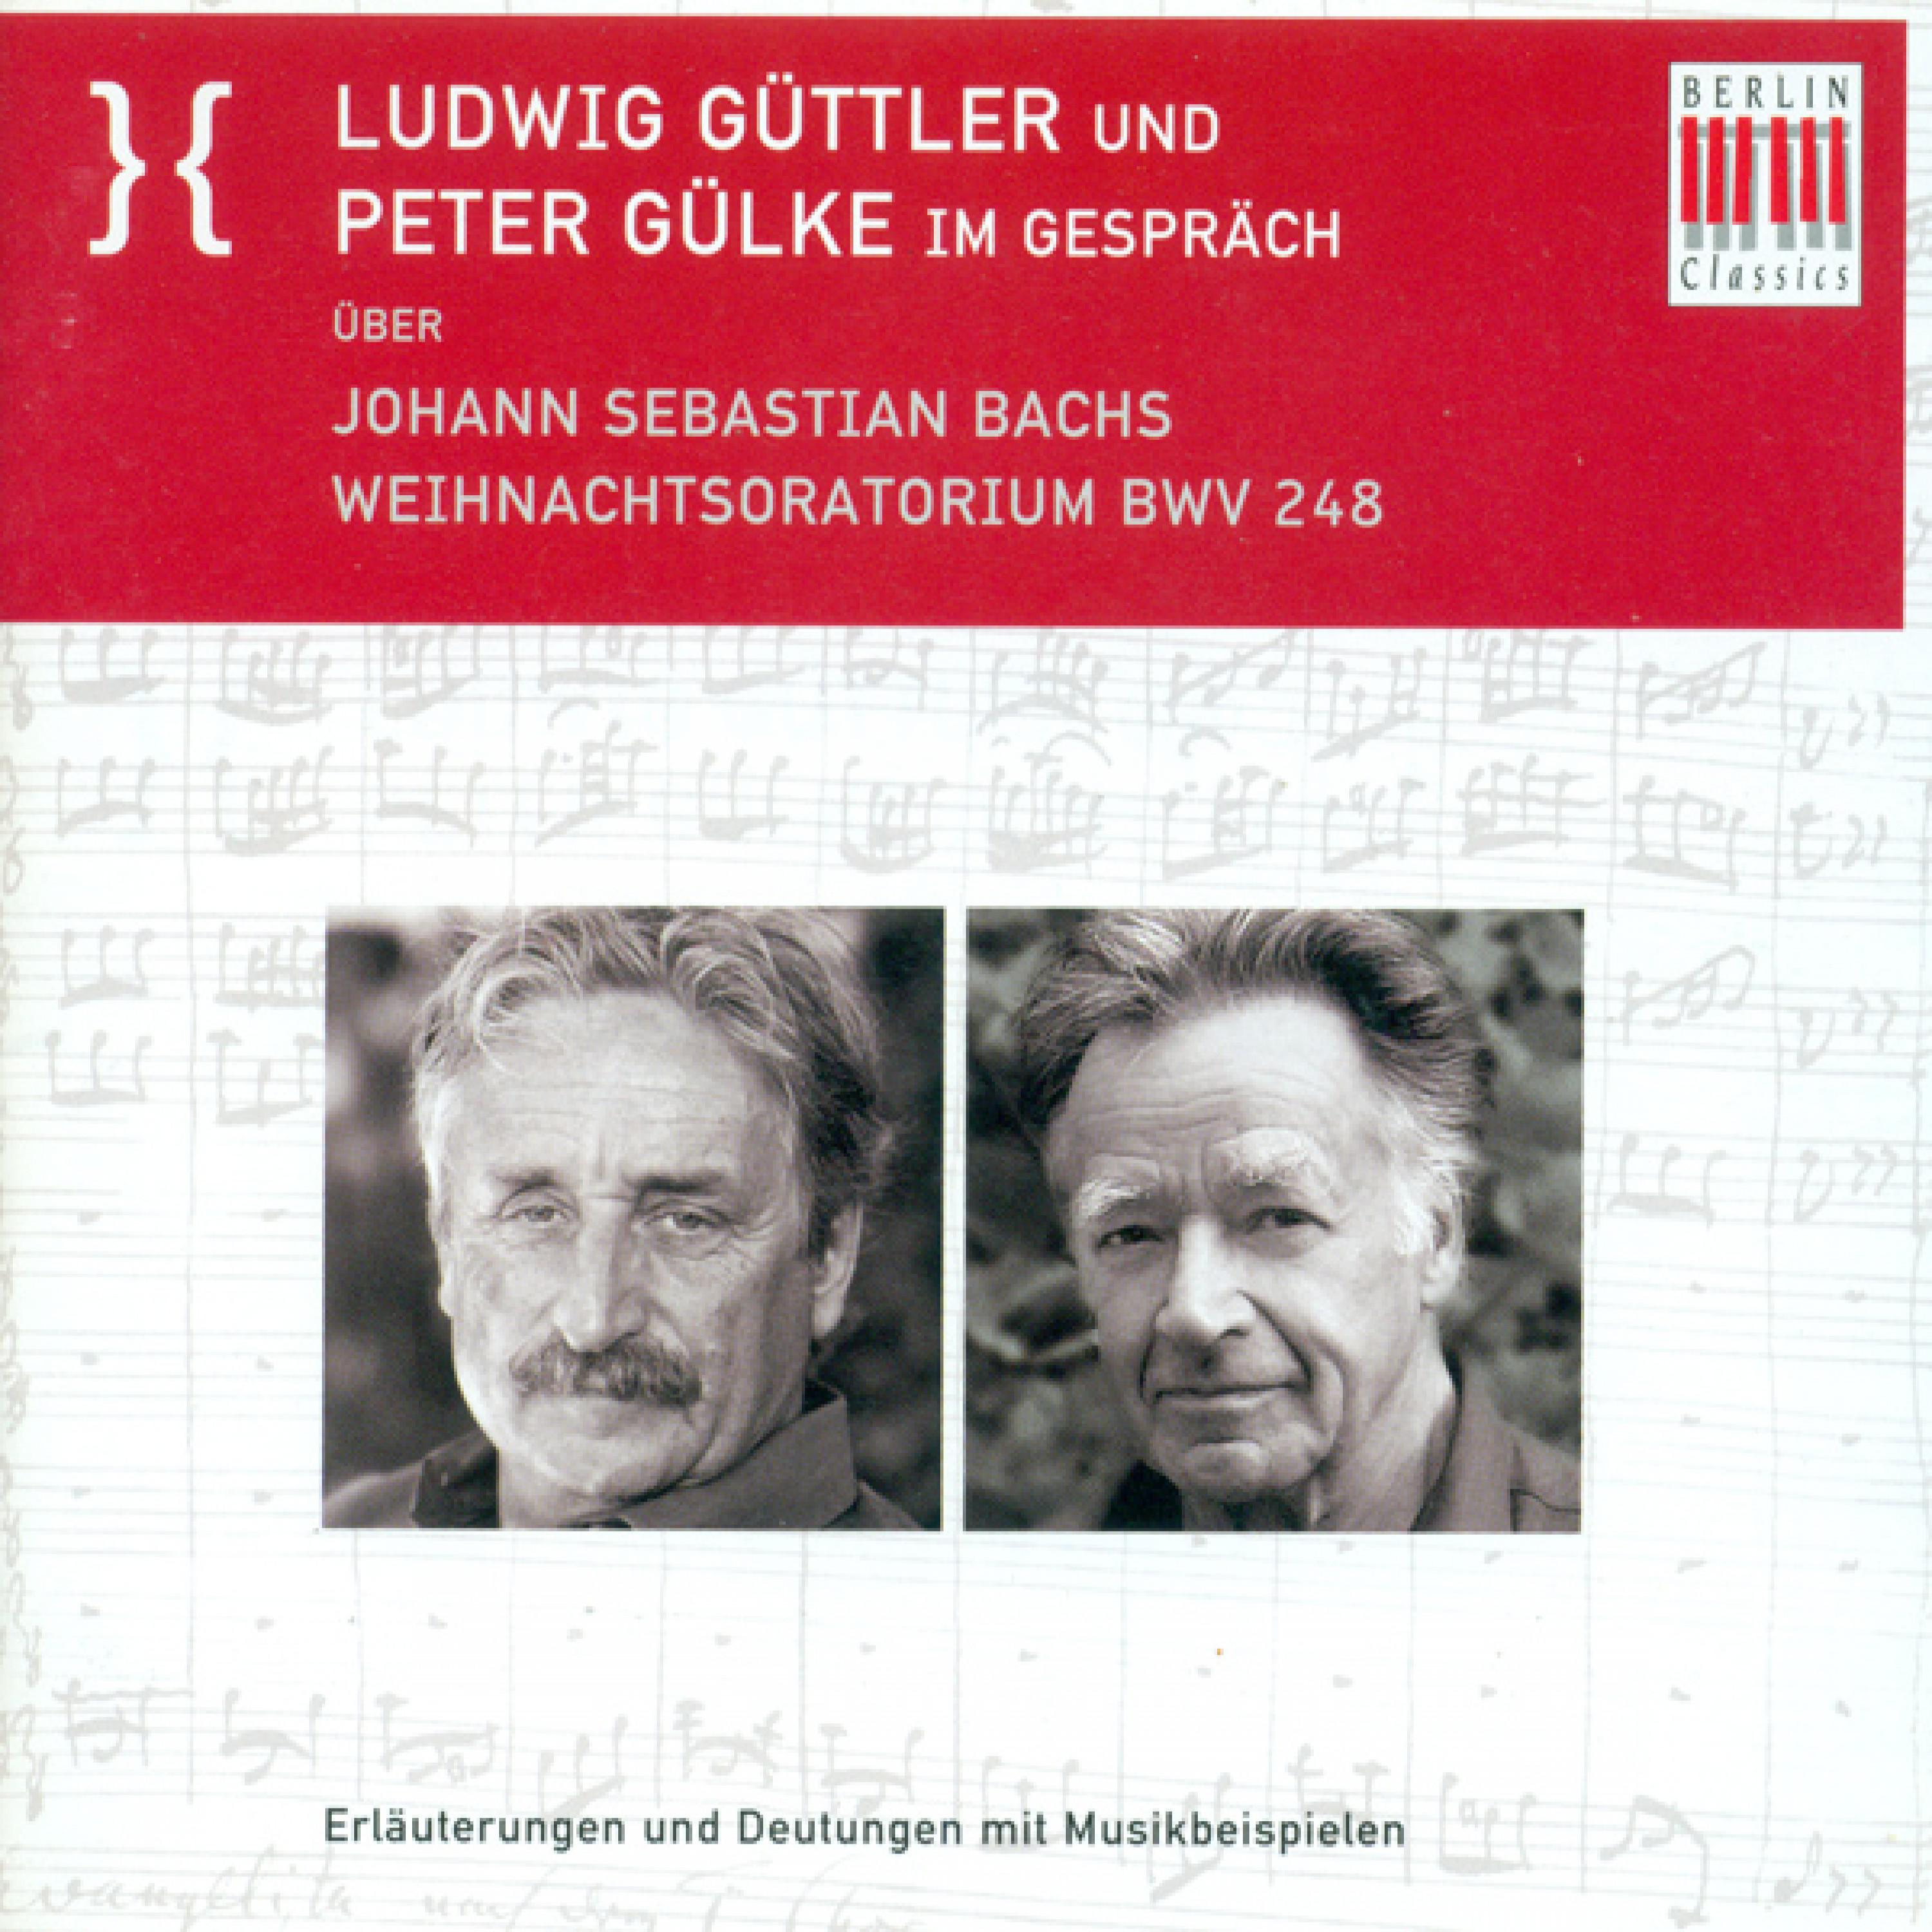 Ludwig Guttler und Peter Gulke Im Gesprach uber Johann Sebastian Bach' s Weihnachtsoratorium BWV 248: Die 1 2. und 3. Person als Ebenen statt Dramatisierung